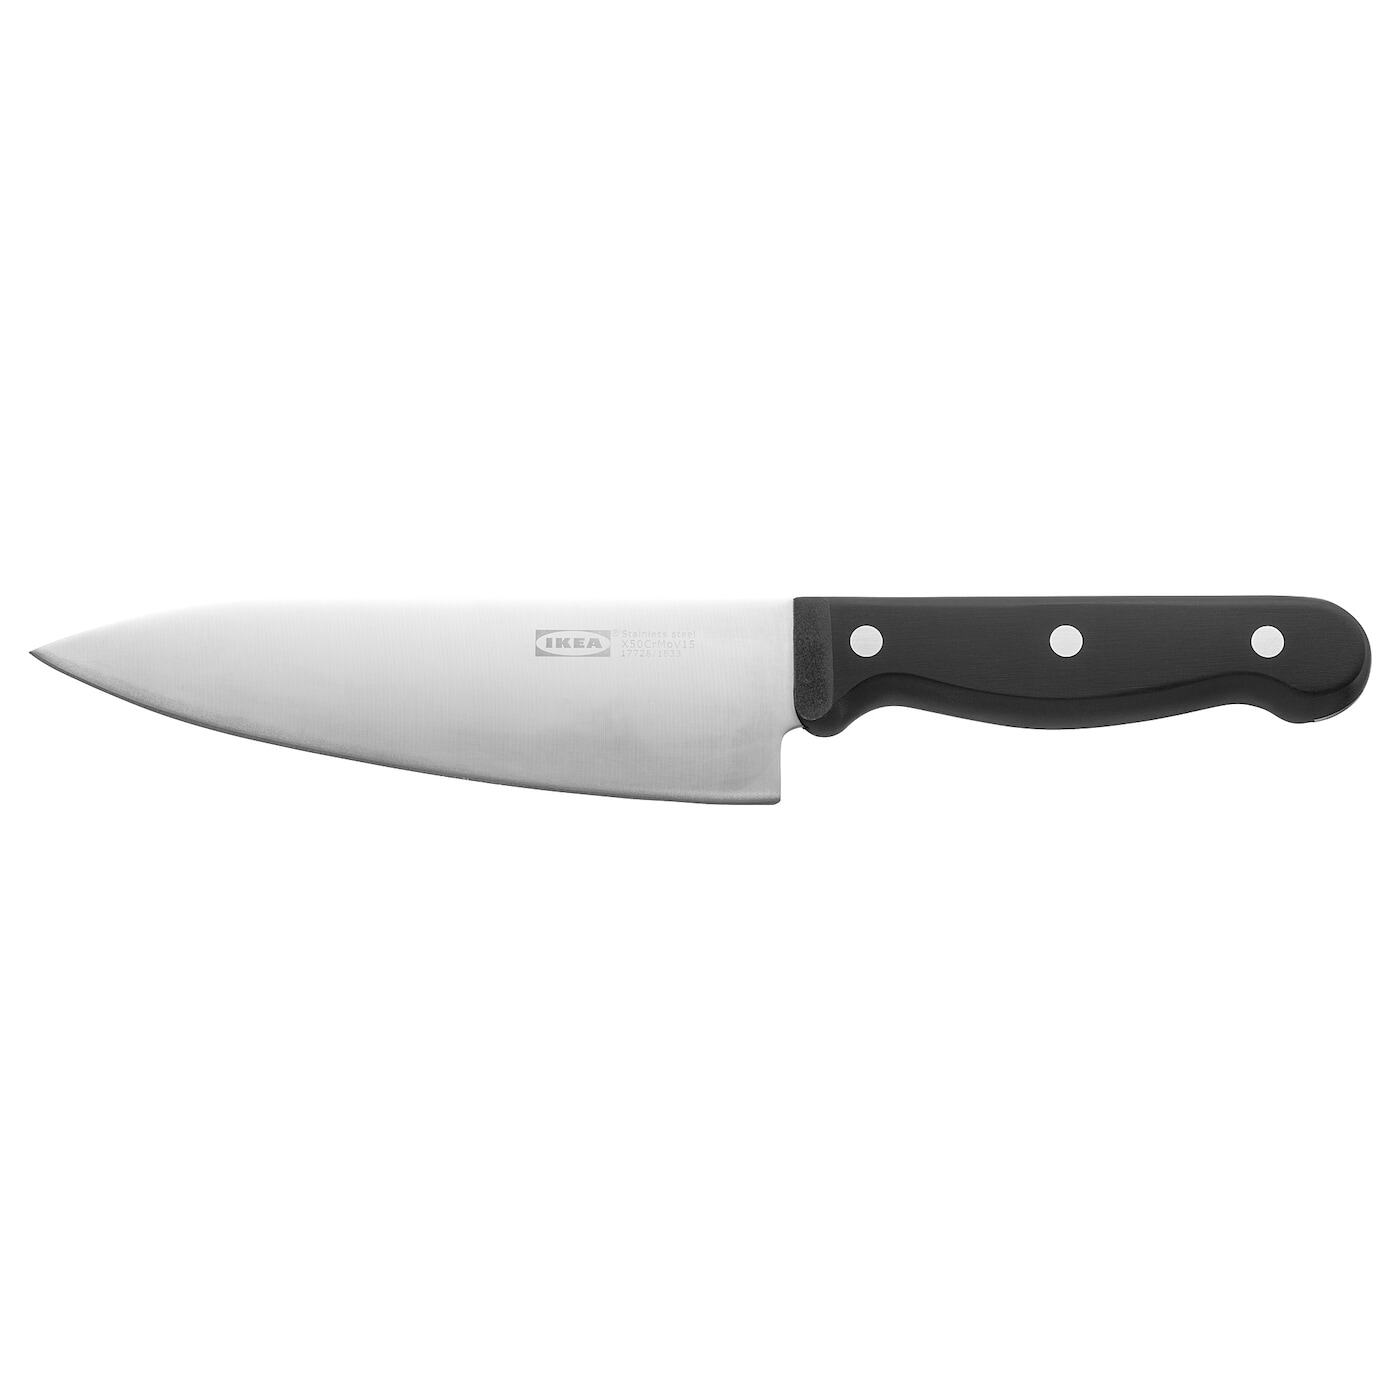 [ส่งฟรี ] มีดทำครัว, เทาเข้ม 16 ซม. Cook's knife, dark grey 16 cm มีดทำครัว ชุดมีดทำครัว มีดหั่นสเต็ก มีดหั่นเนื้อหมู มีดหั่นของ โปรโมชั่นสุดคุ้ม โค้งสุดท้าย คุณภาพดี